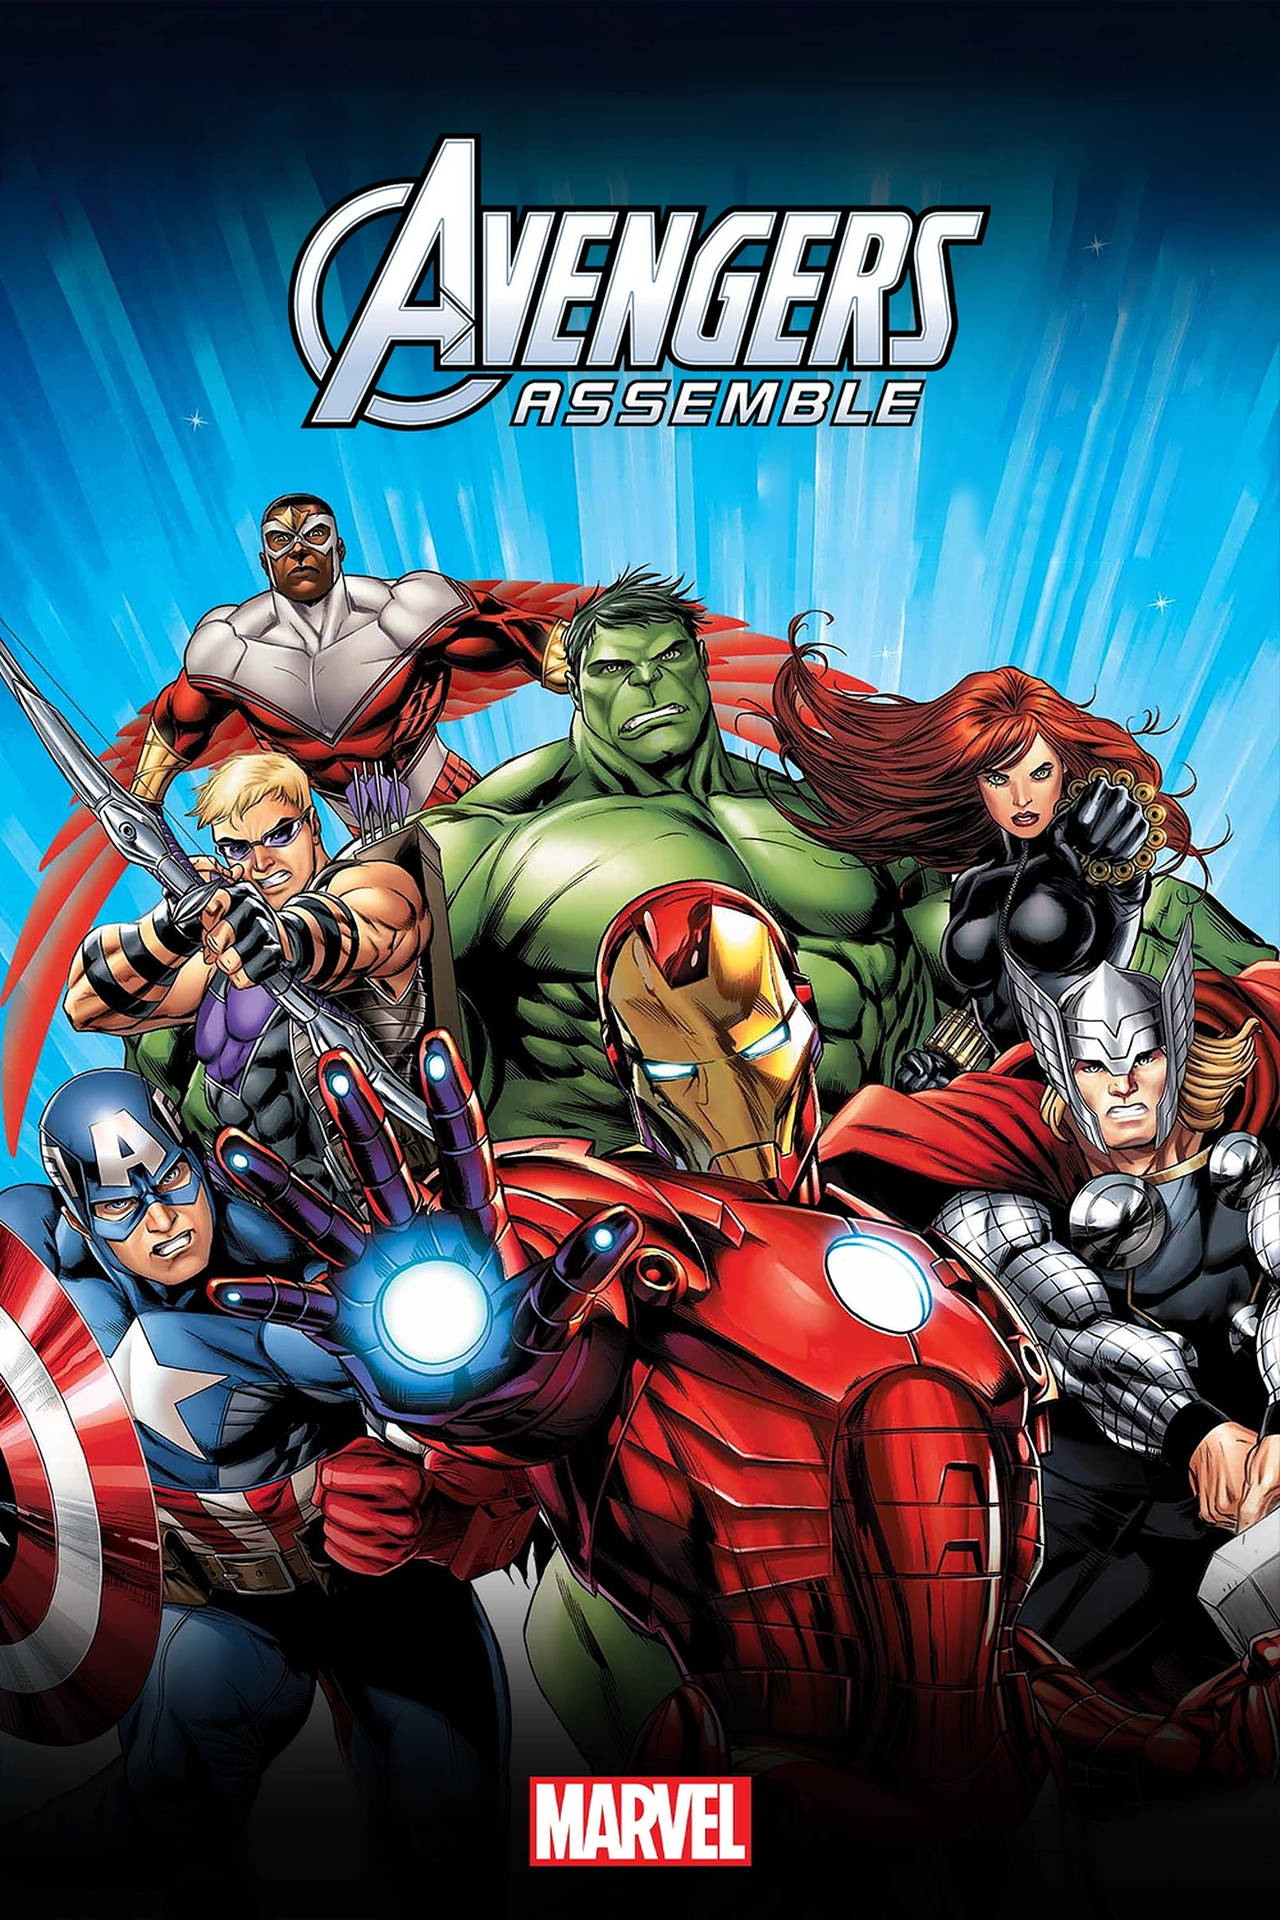 Avengerssamla In Fierce Affisch. Wallpaper